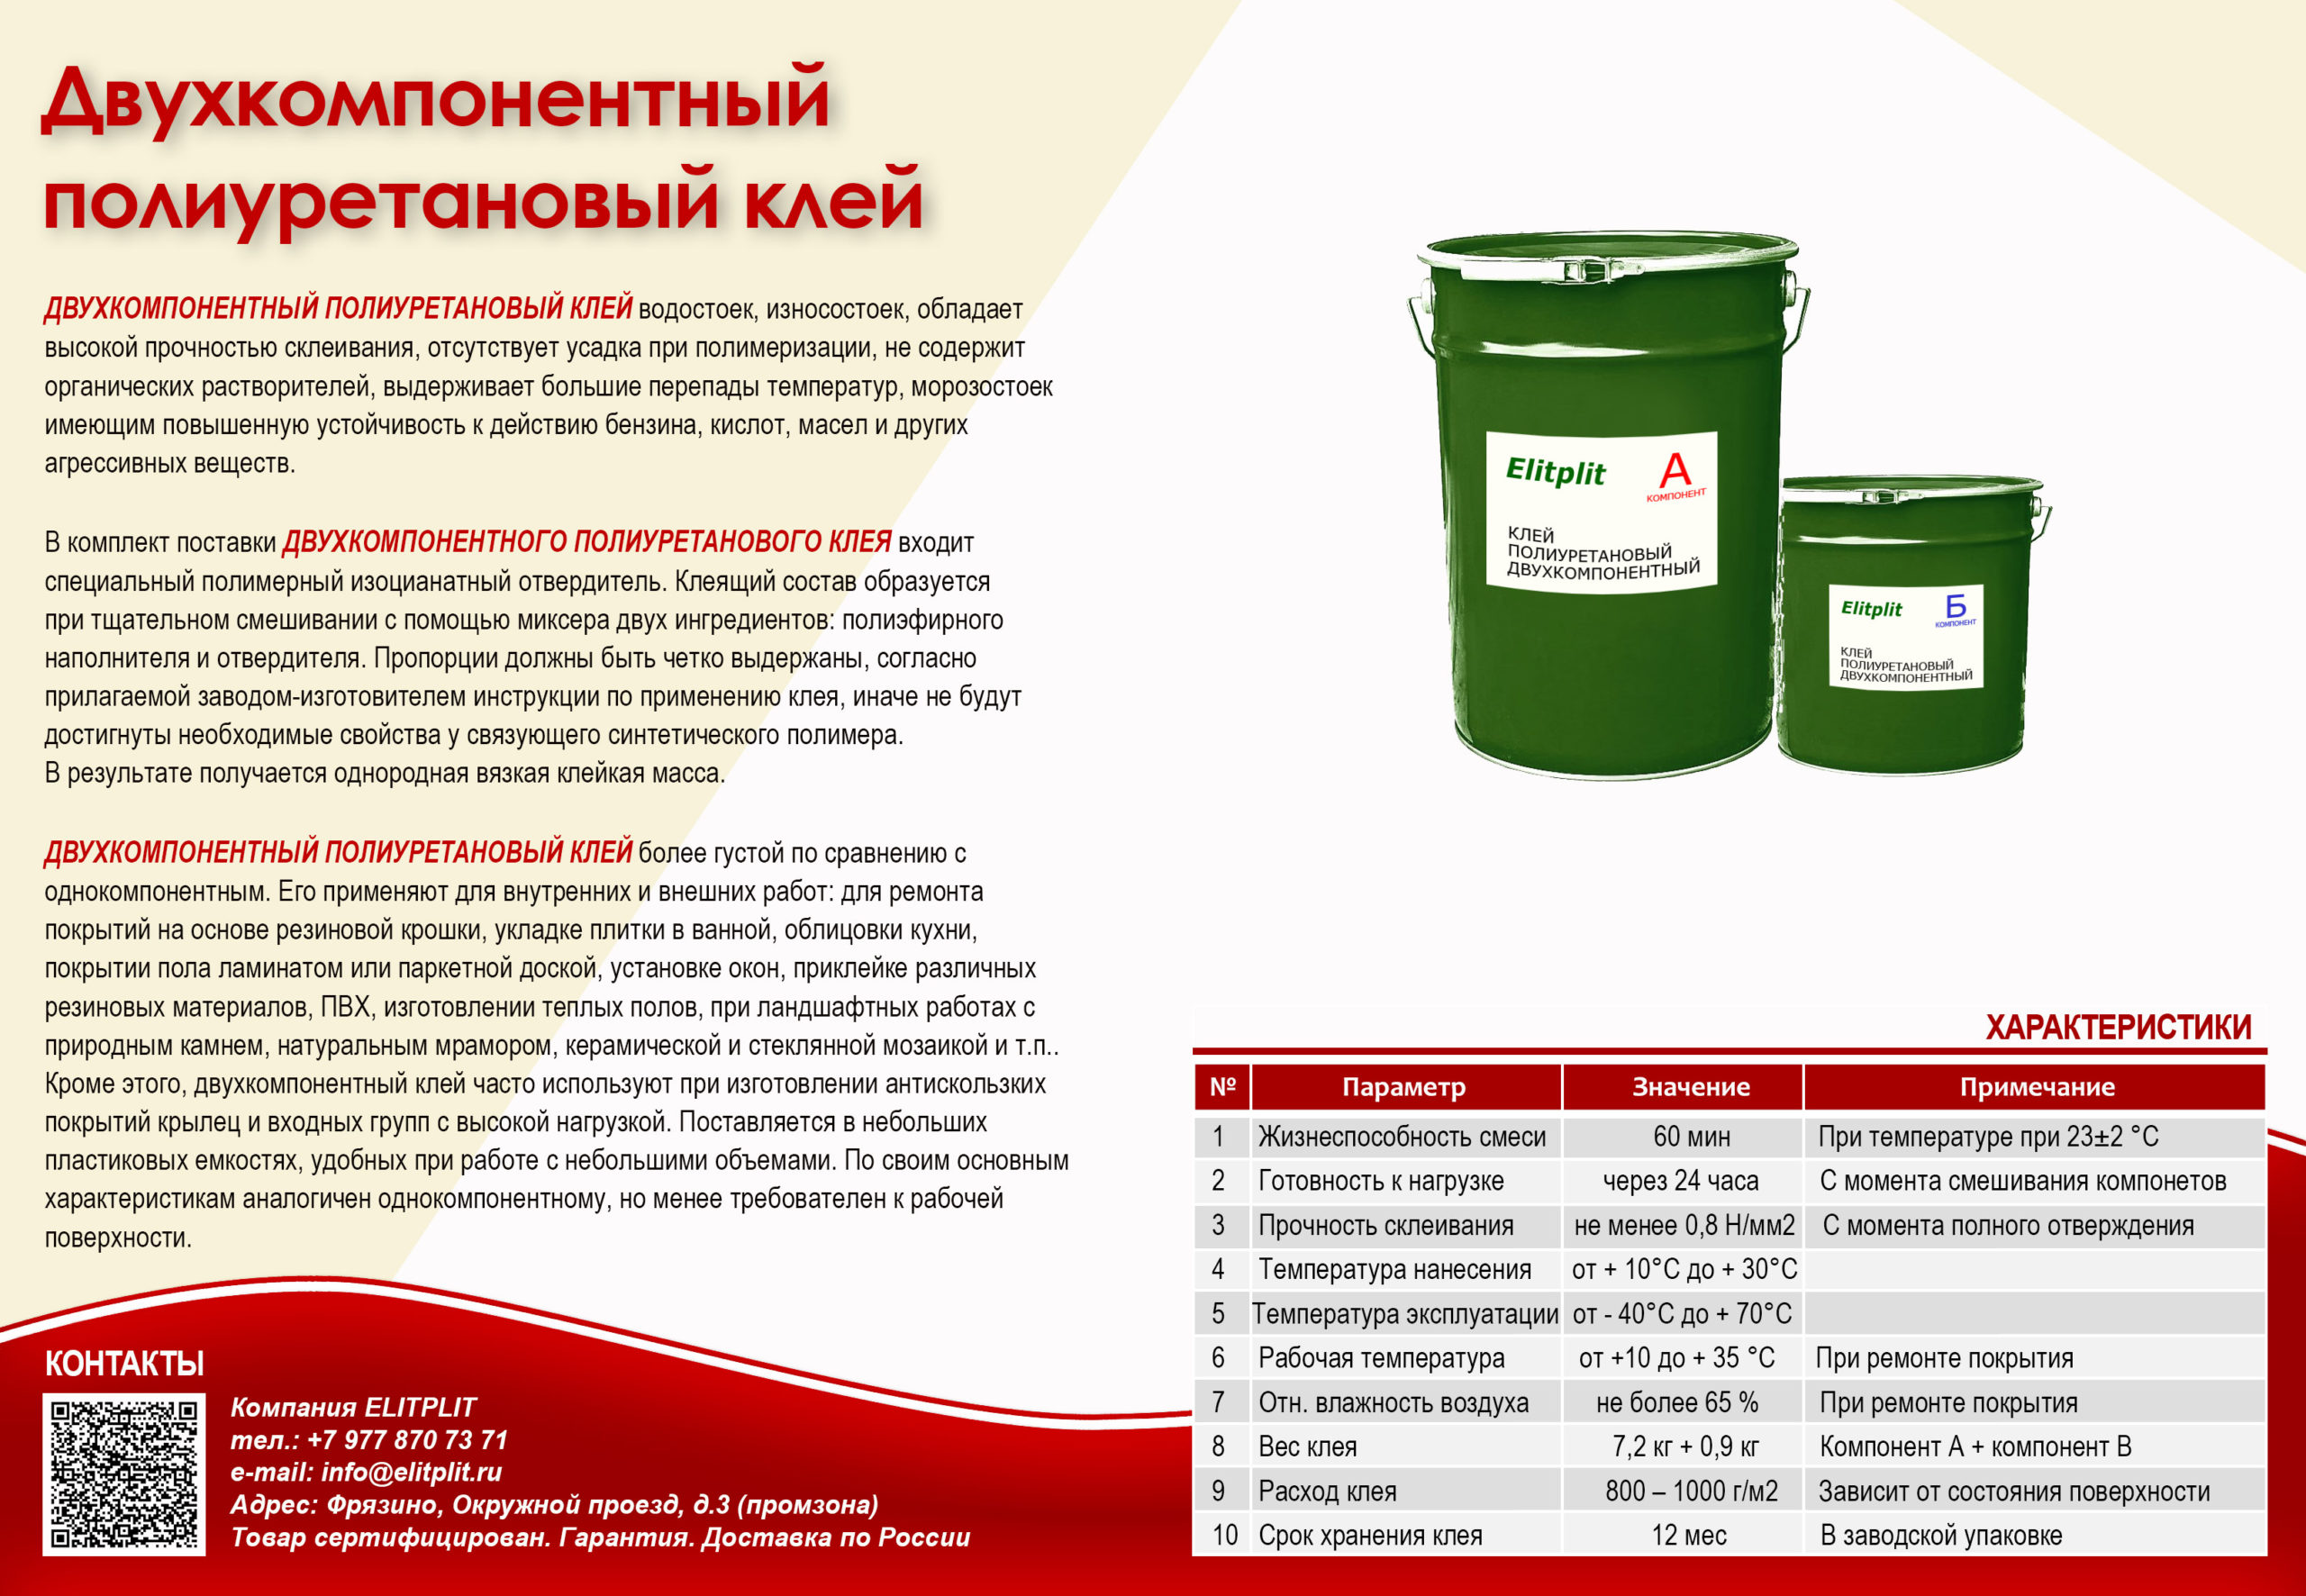 Однокомпонентный и двухкомпонентный полиуретановый клей: области применения :: syl.ru